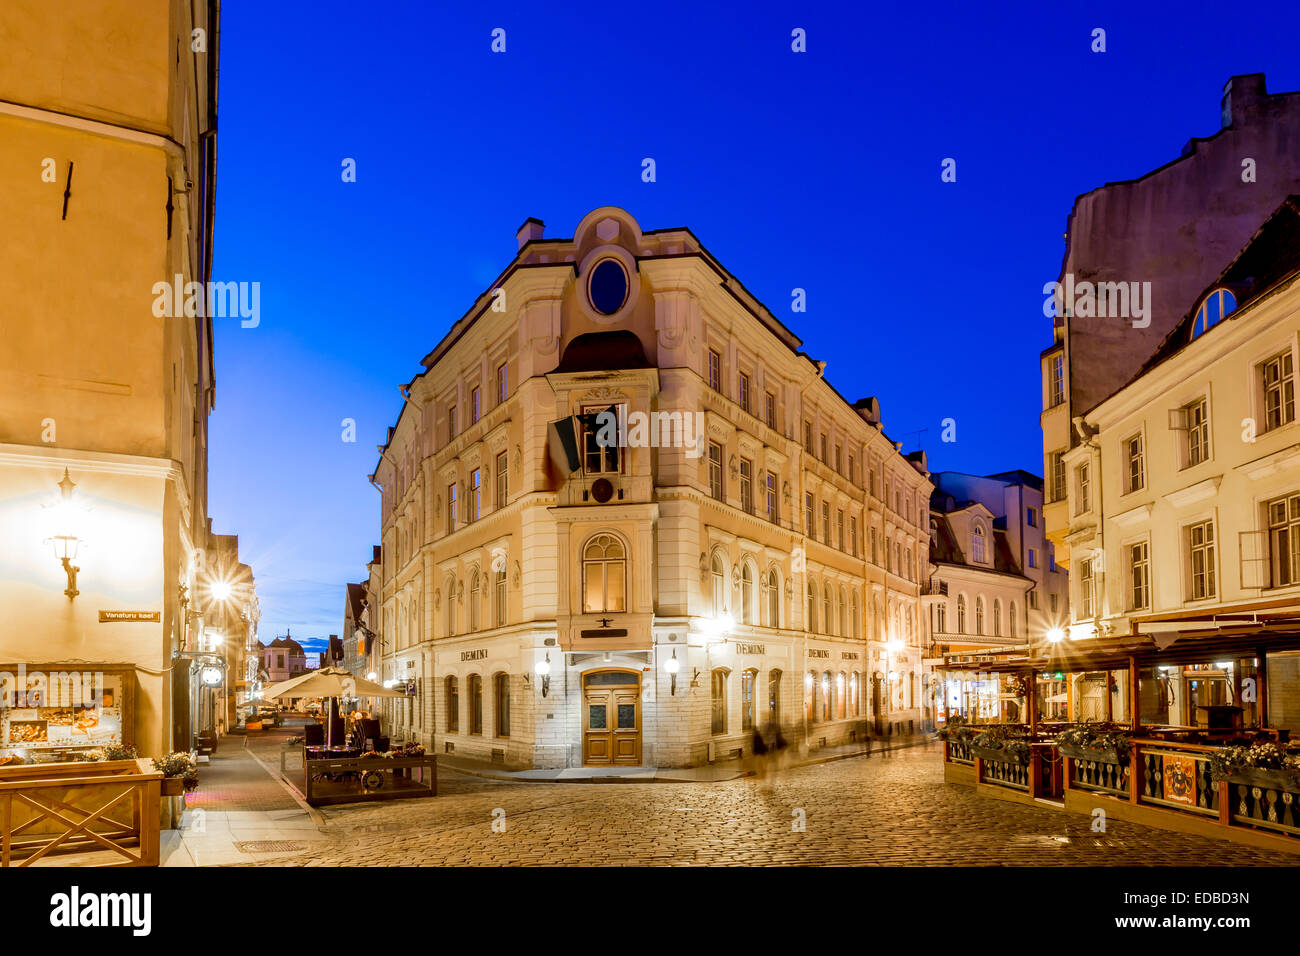 Piazza Vecchia o Varna trug nella città vecchia di notte, Tallinn, Estonia Foto Stock